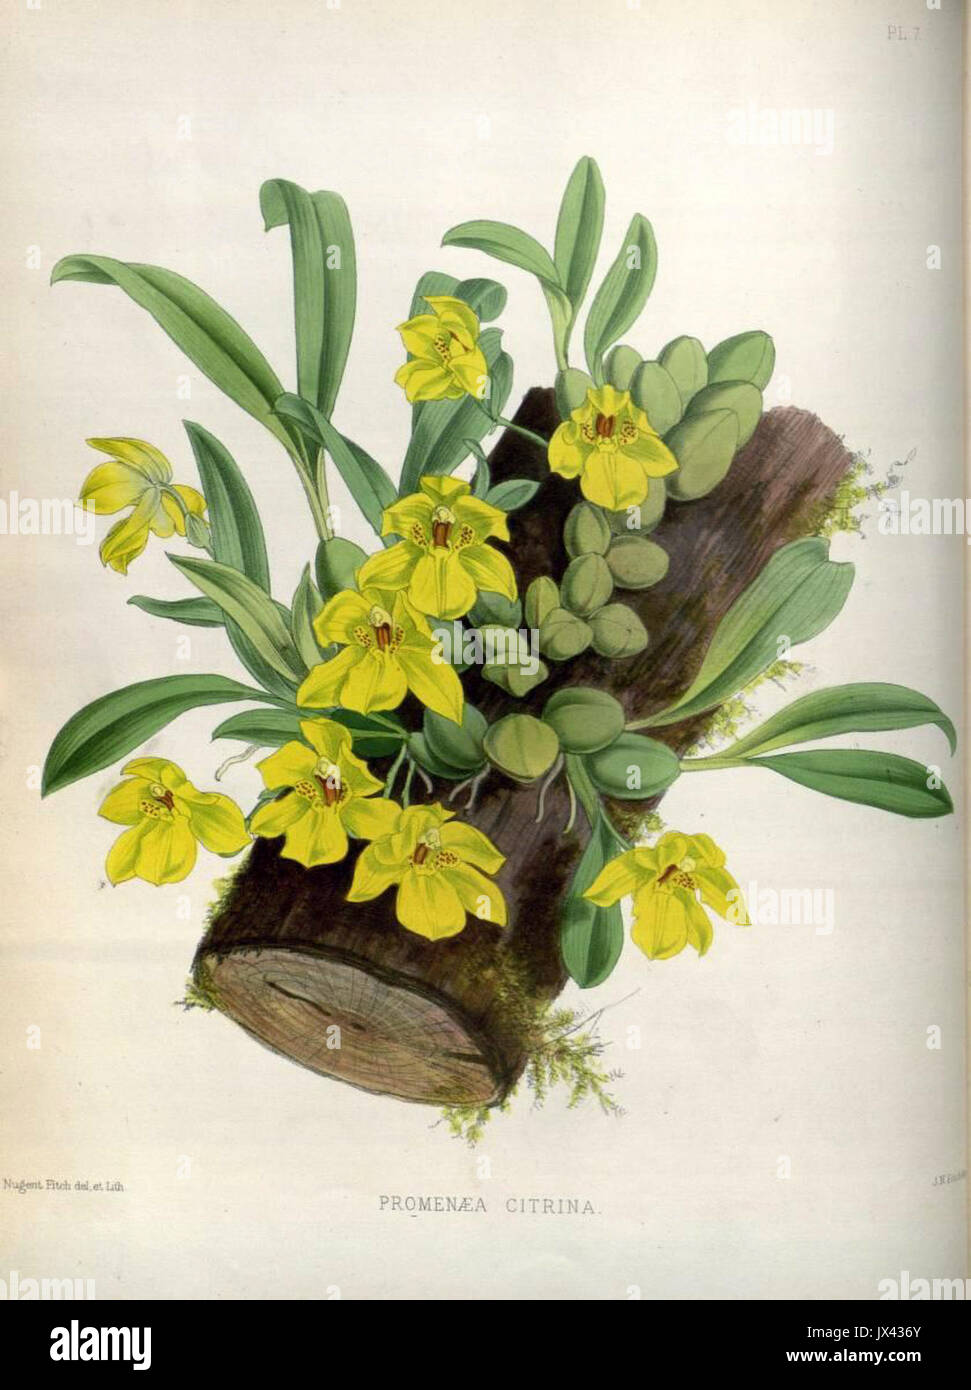 (The Orchid Album Plate 007) Promenaea citrina Stock Photo